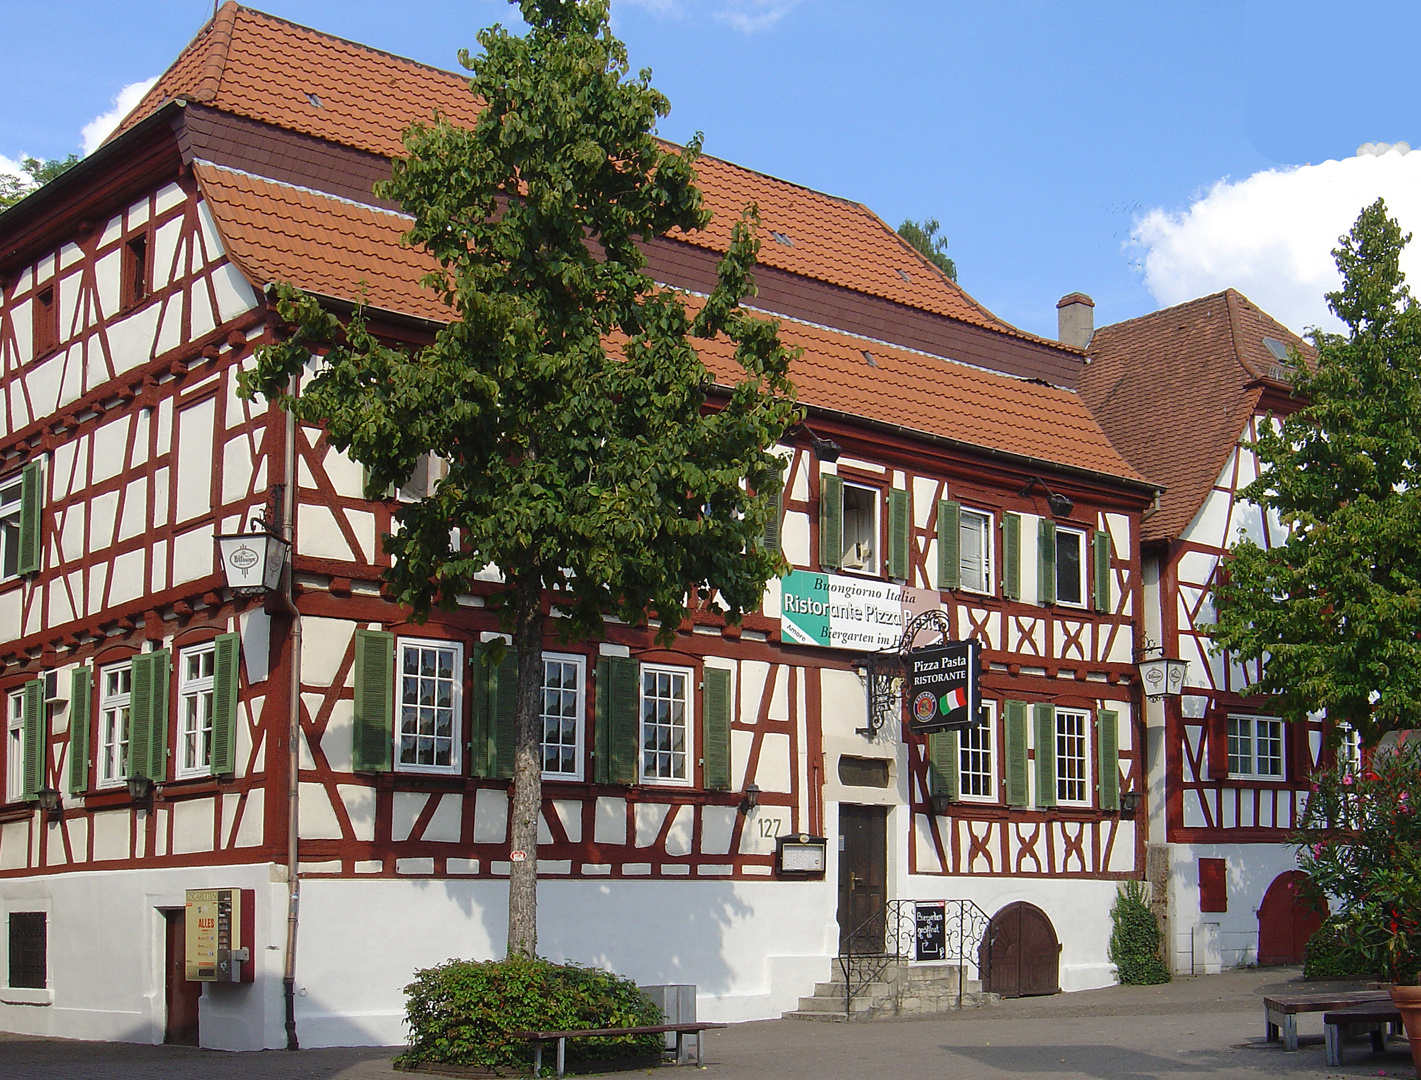 Une maison de Sinsheim aux couleurs prédestinées pour accueillir une pizzeria.